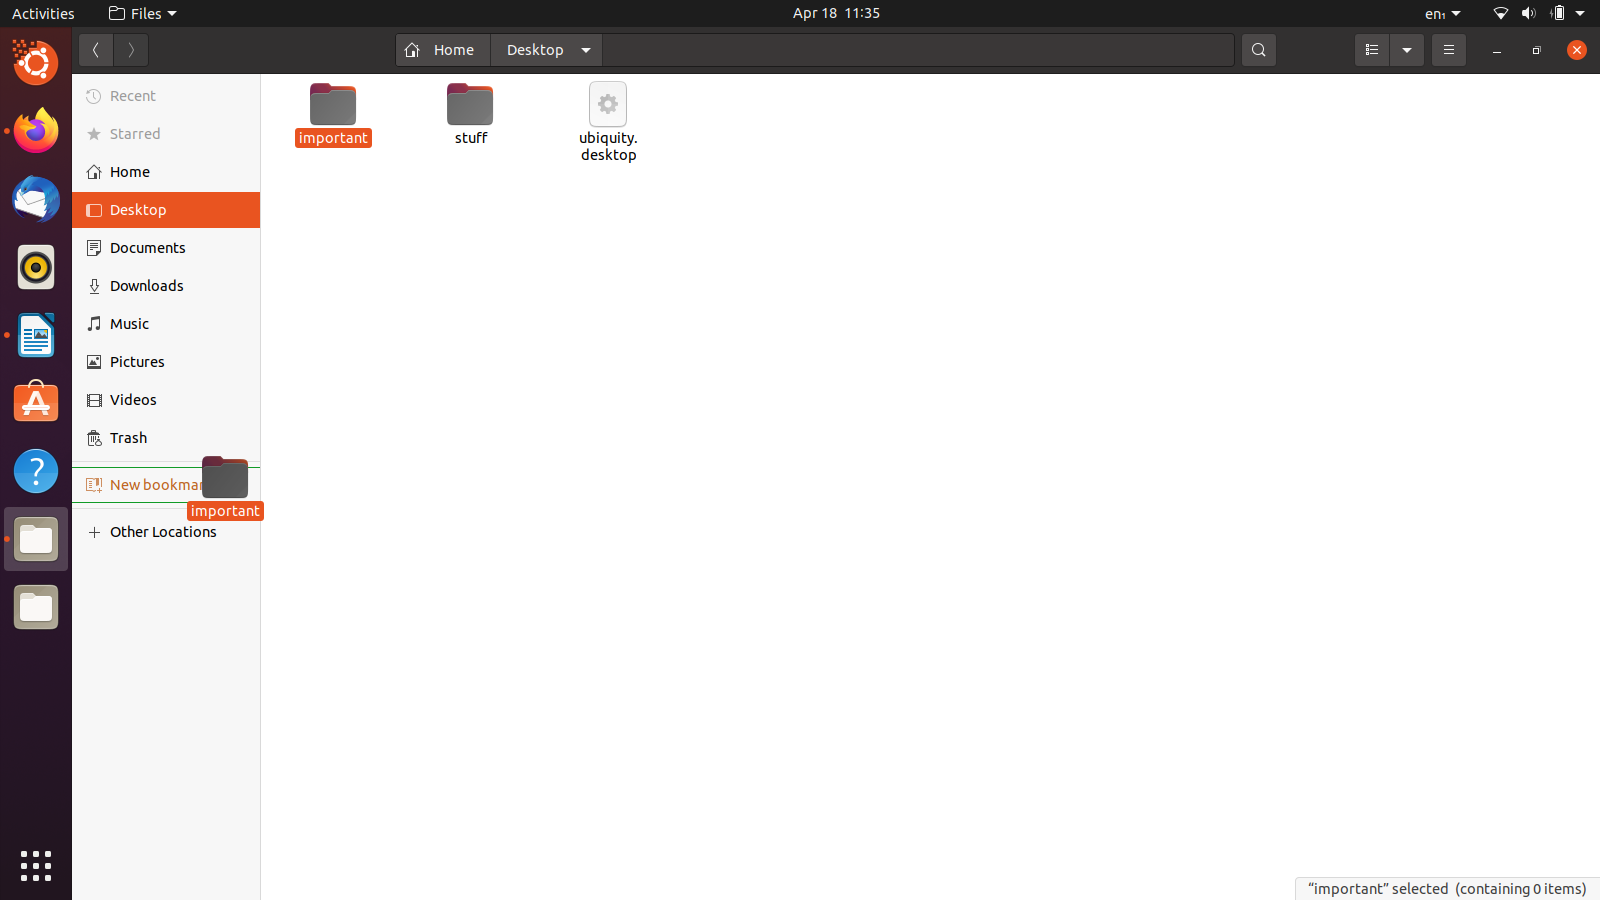 Comment ajouter un dossier à la barre latérale d'Ubuntu?